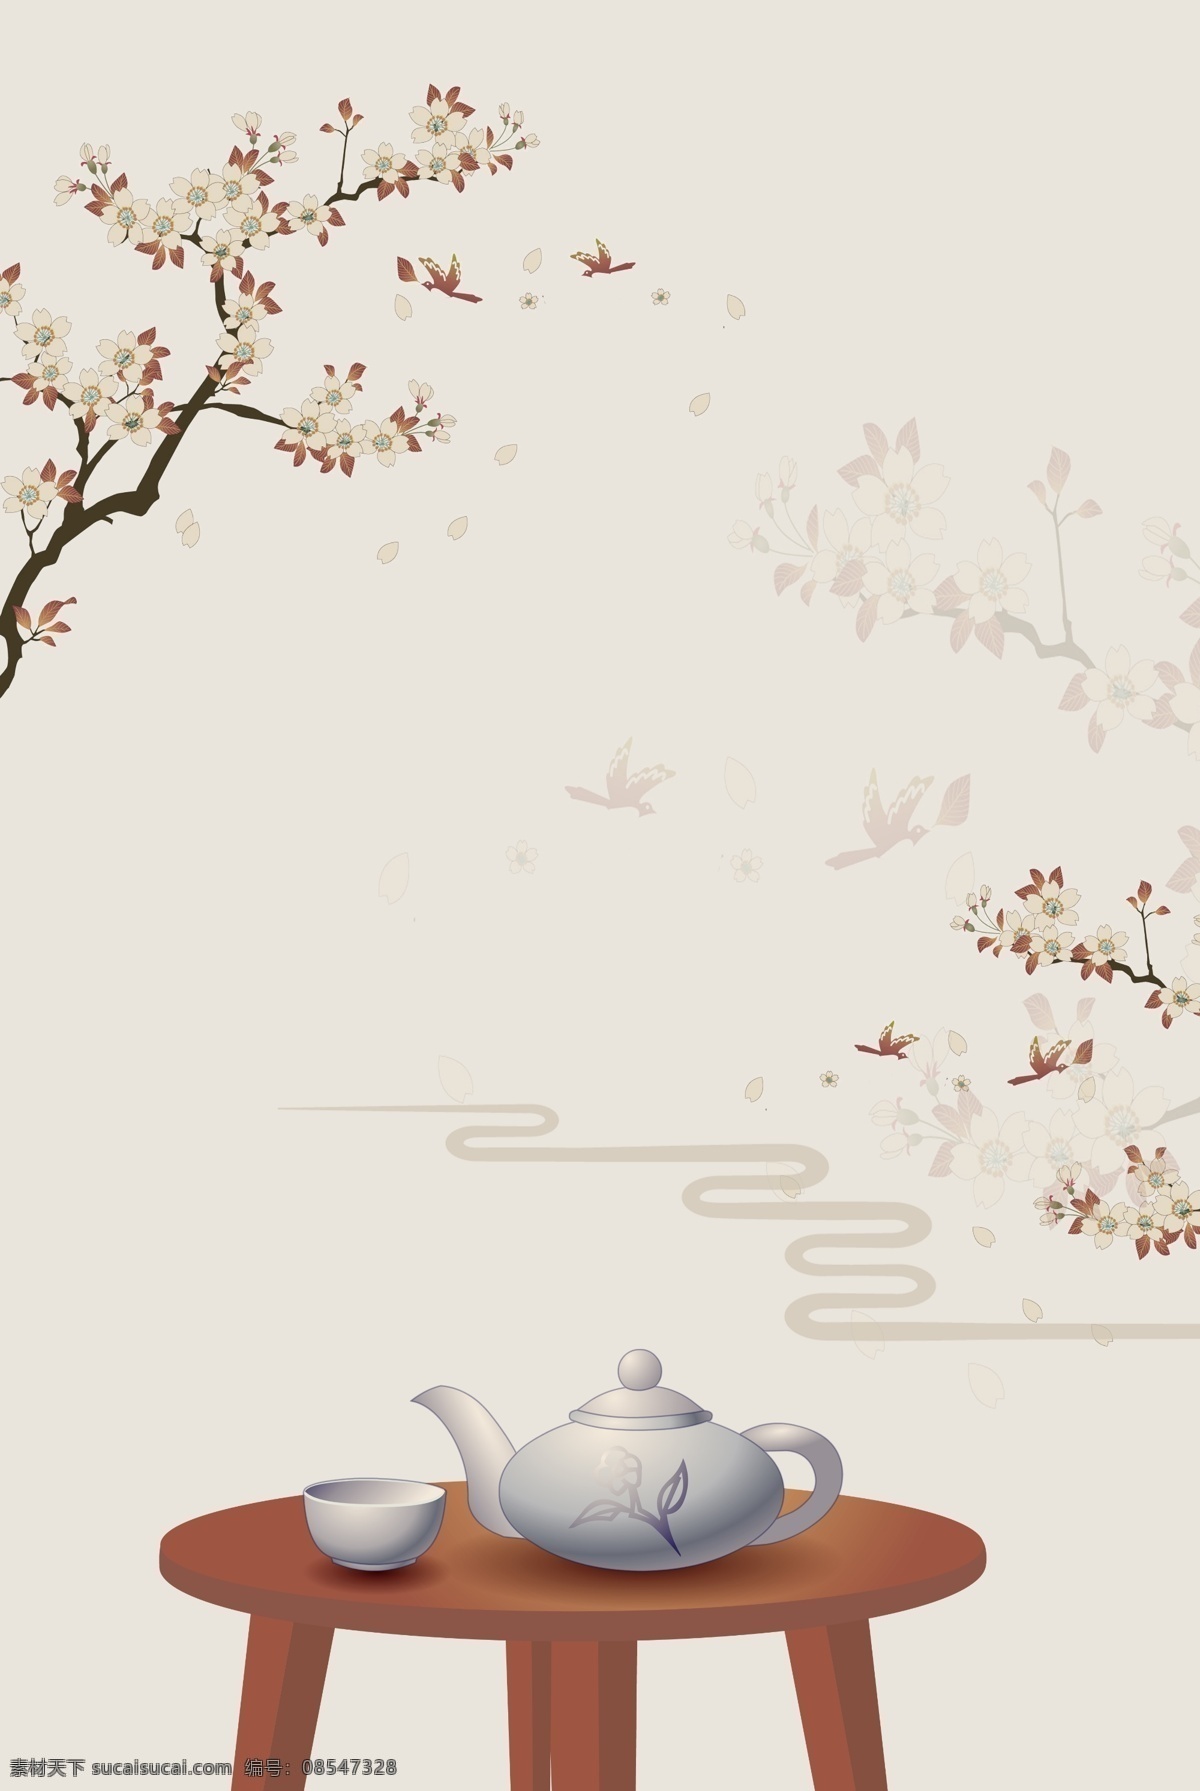 白茶 白露 文艺 米色 喝茶 广告 背景 茶壶 古风 中国风